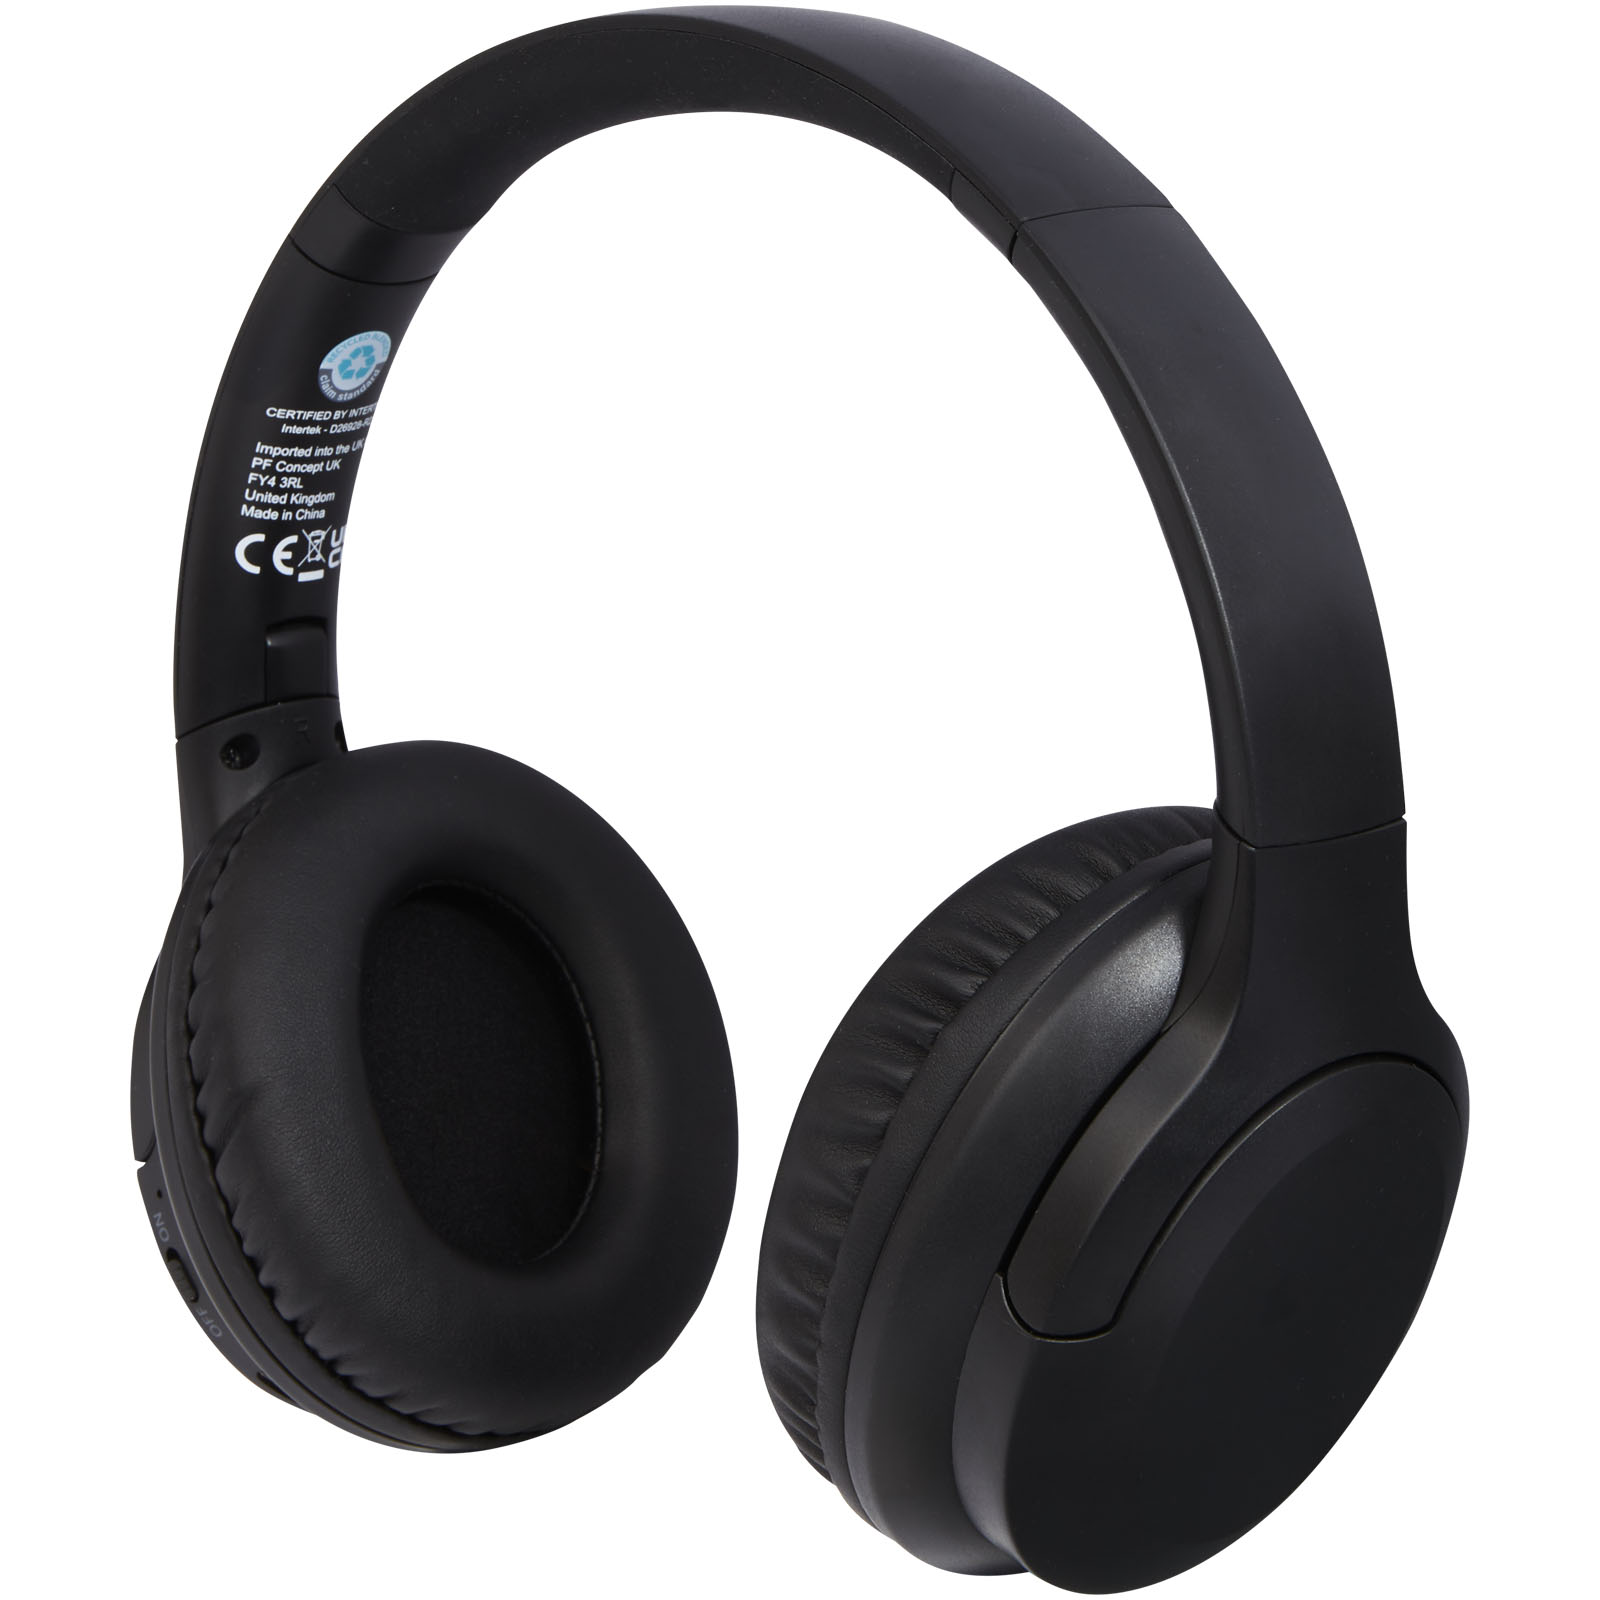 Headphones - Loop recycled plastic Bluetooth® headphones